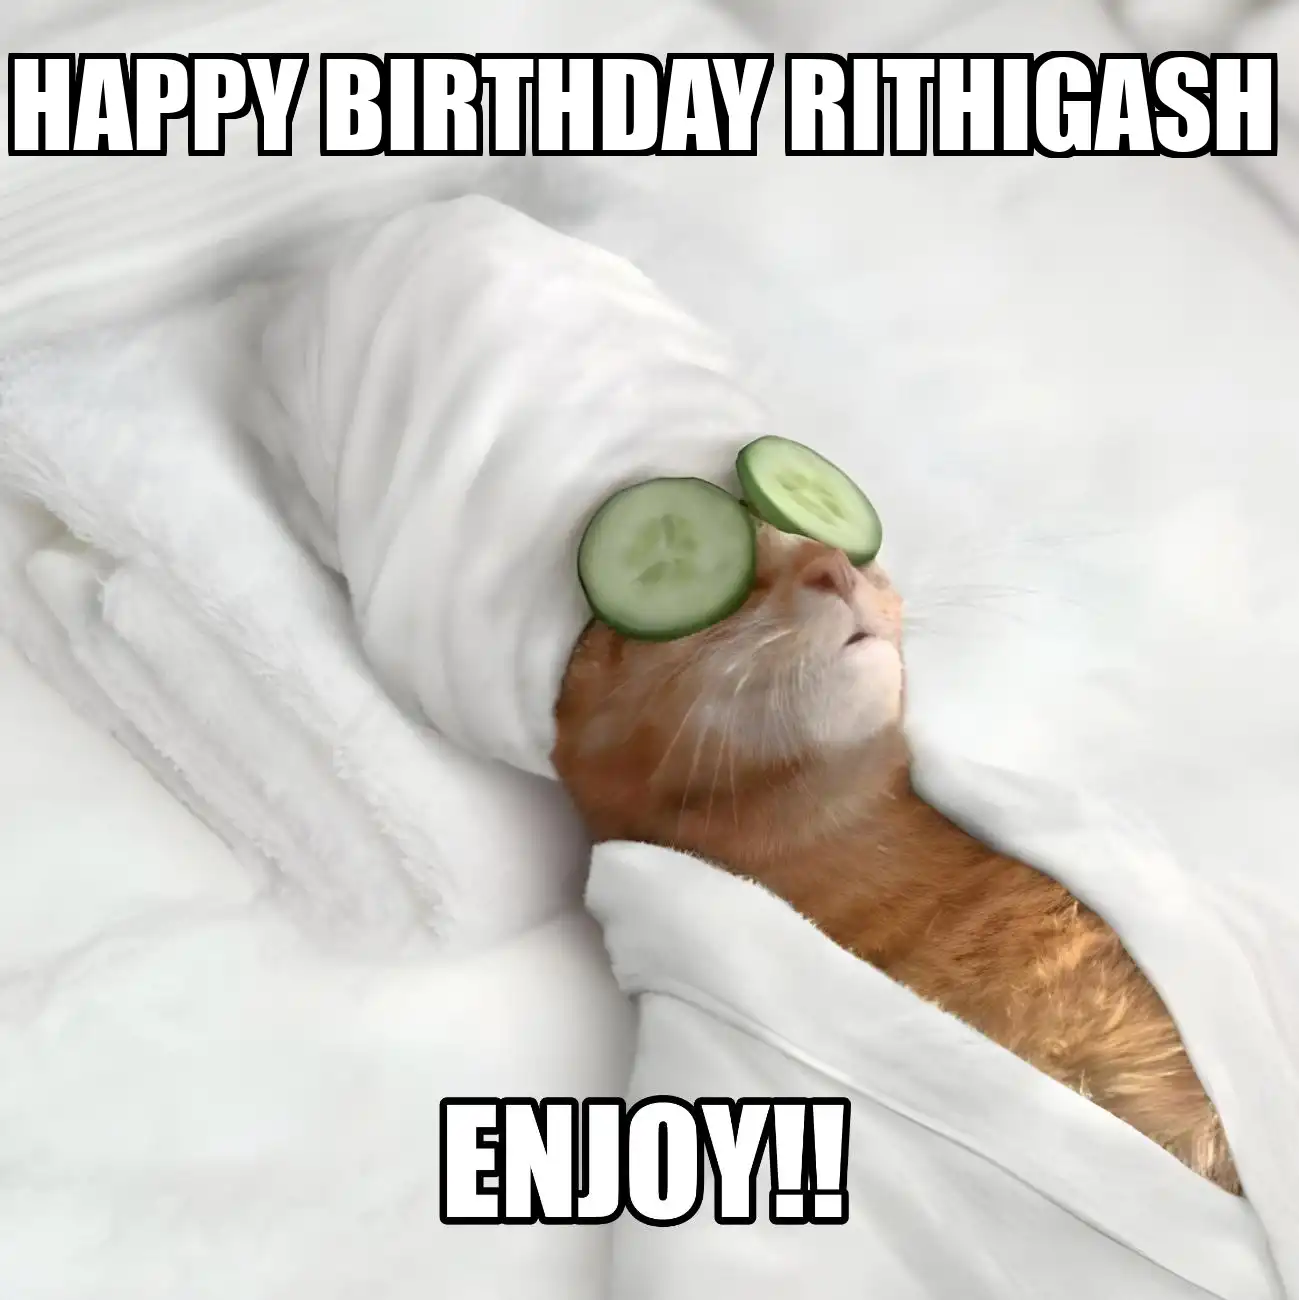 Happy Birthday Rithigash Enjoy Cat Meme